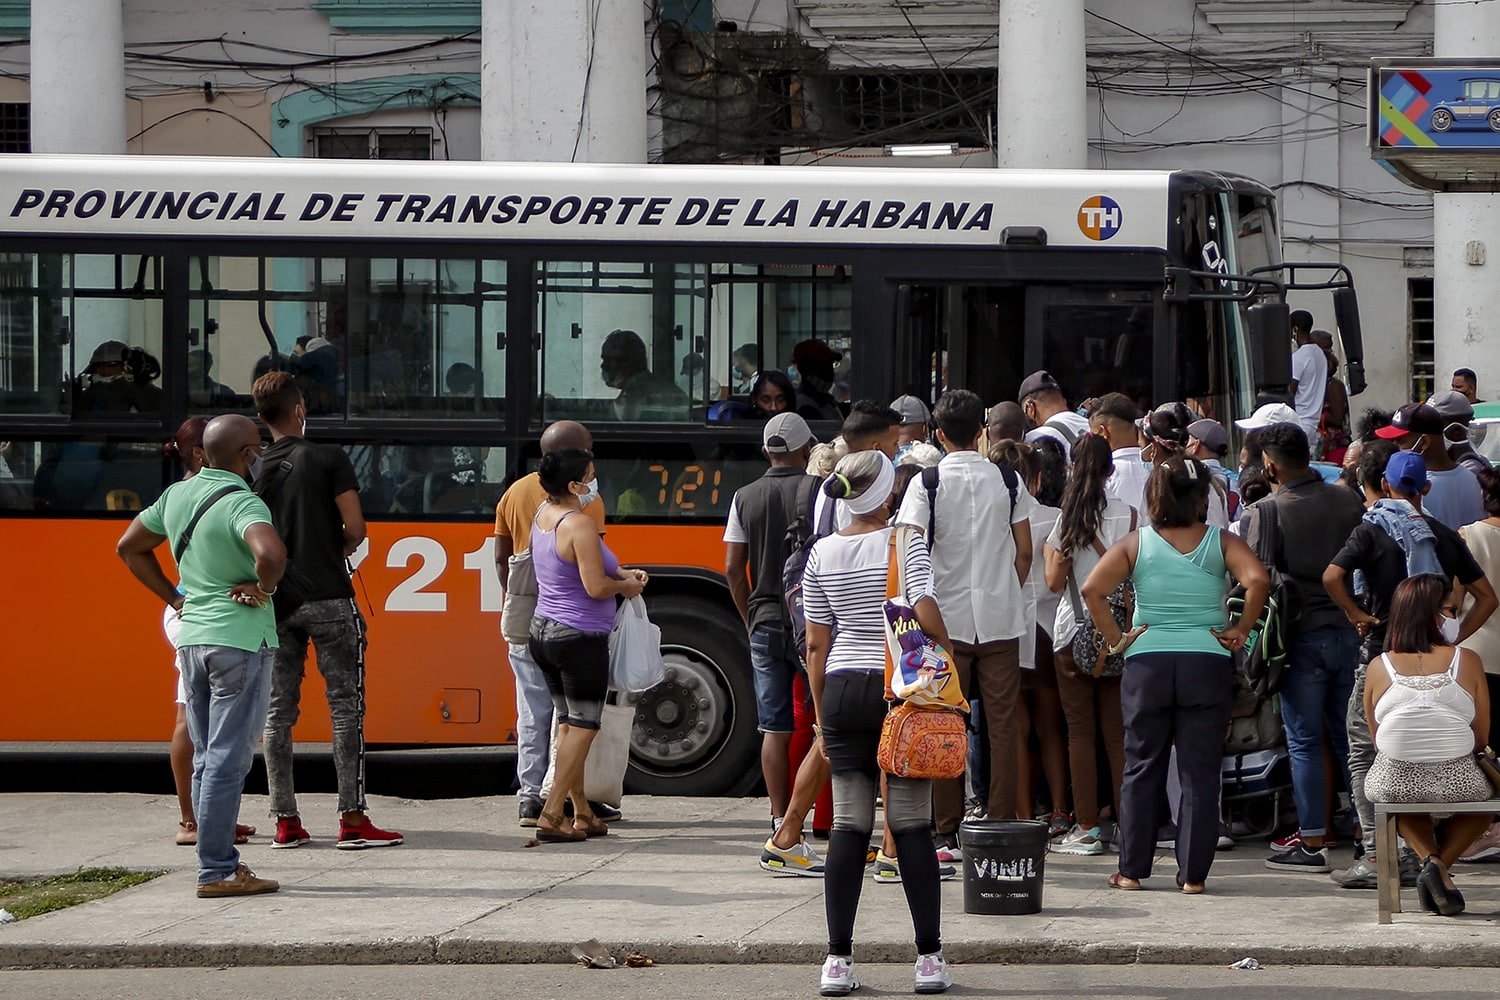  Cuba busca soluciones para la transportación pública ante crisis (+ Fotos)